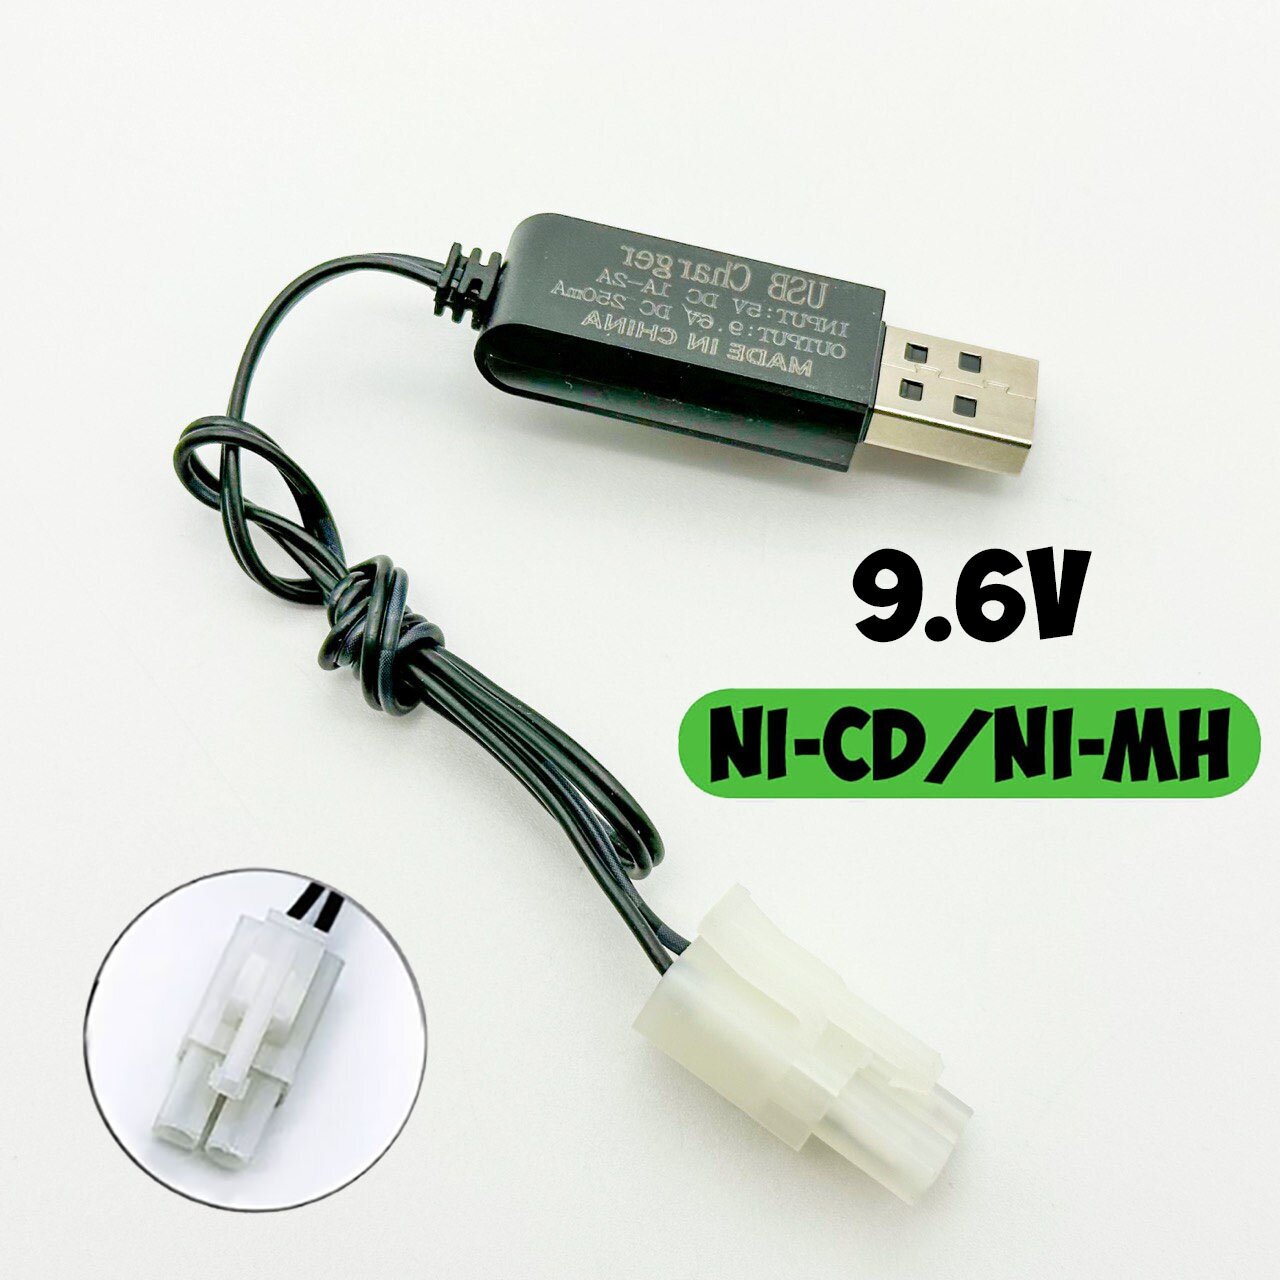 USB зарядное устройство 9.6V для Ni-Cd Ni-MH аккумуляторов 96 Вольт зарядка разъем штекер Тамия (Tamiya) зарядка на р/у машинку-перевертыш